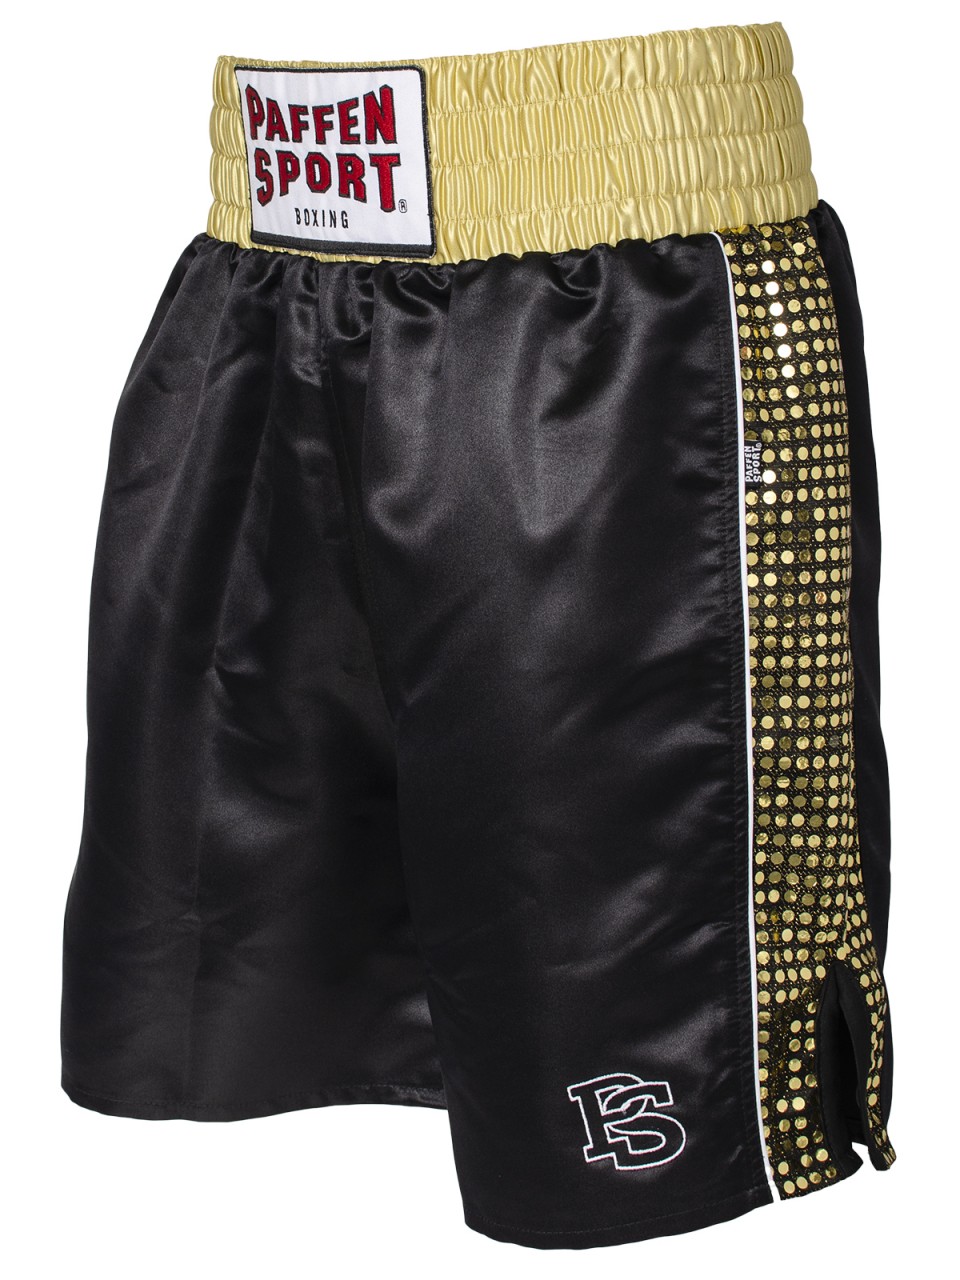 Paffen Sport Profi-Boxerhose schwarz/gold von PAFFEN SPORT